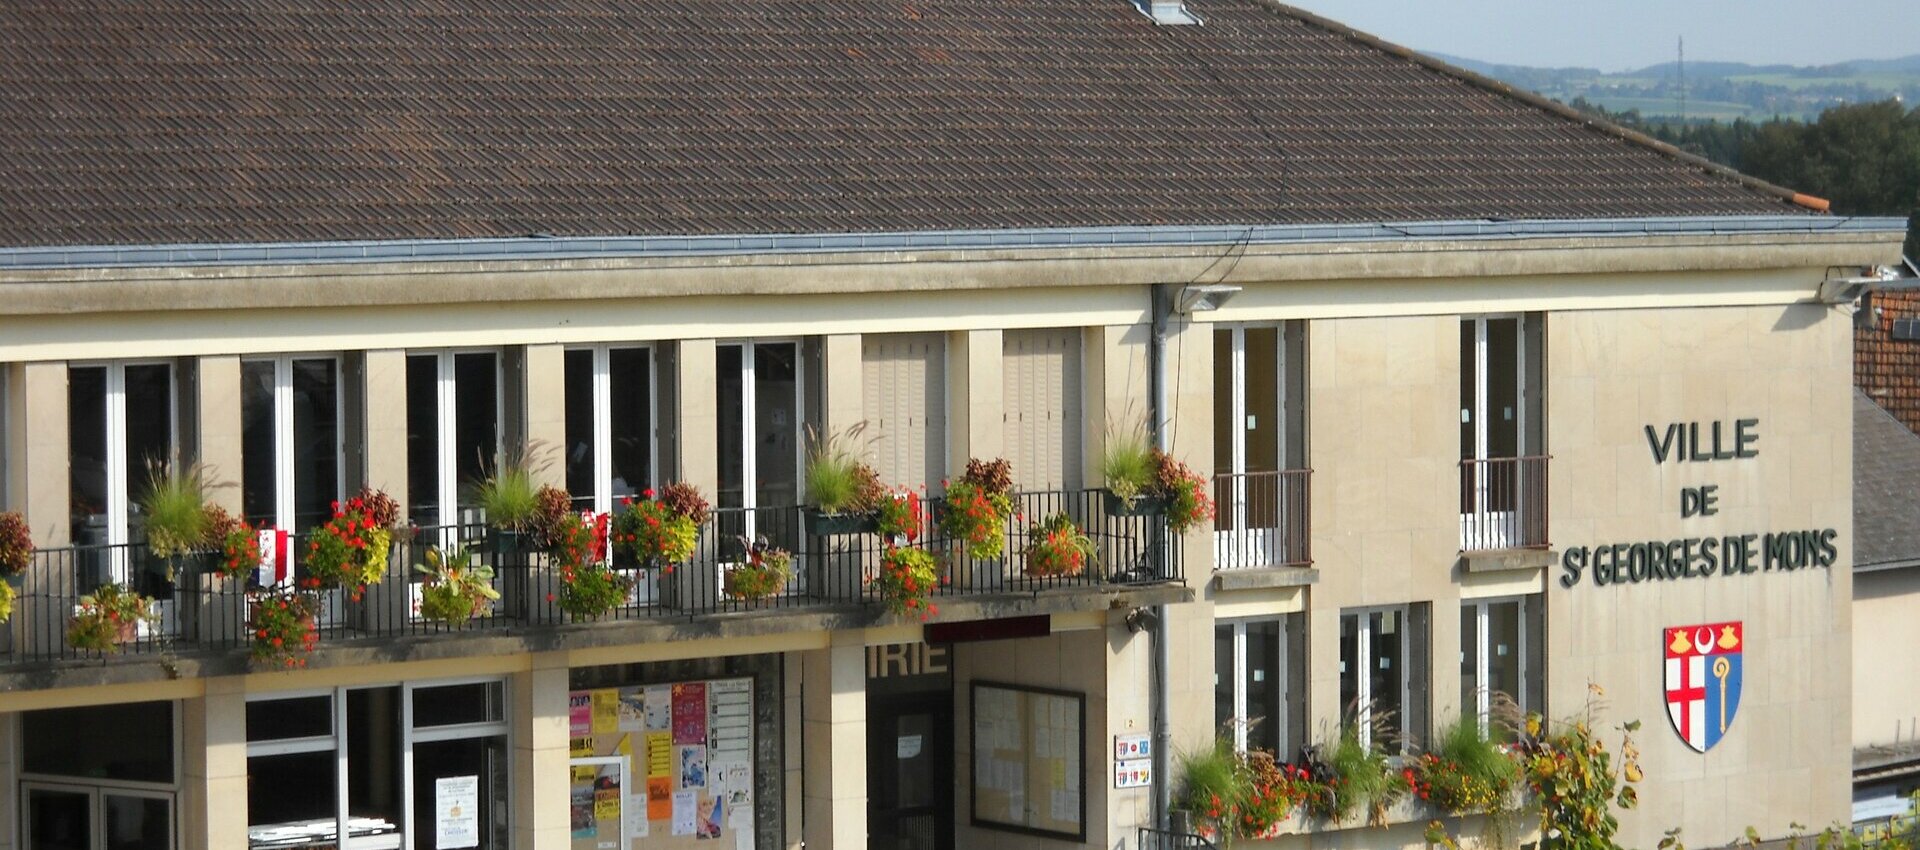 Mairie de Saint Georges de Mons (63) Puy-de-Dôme